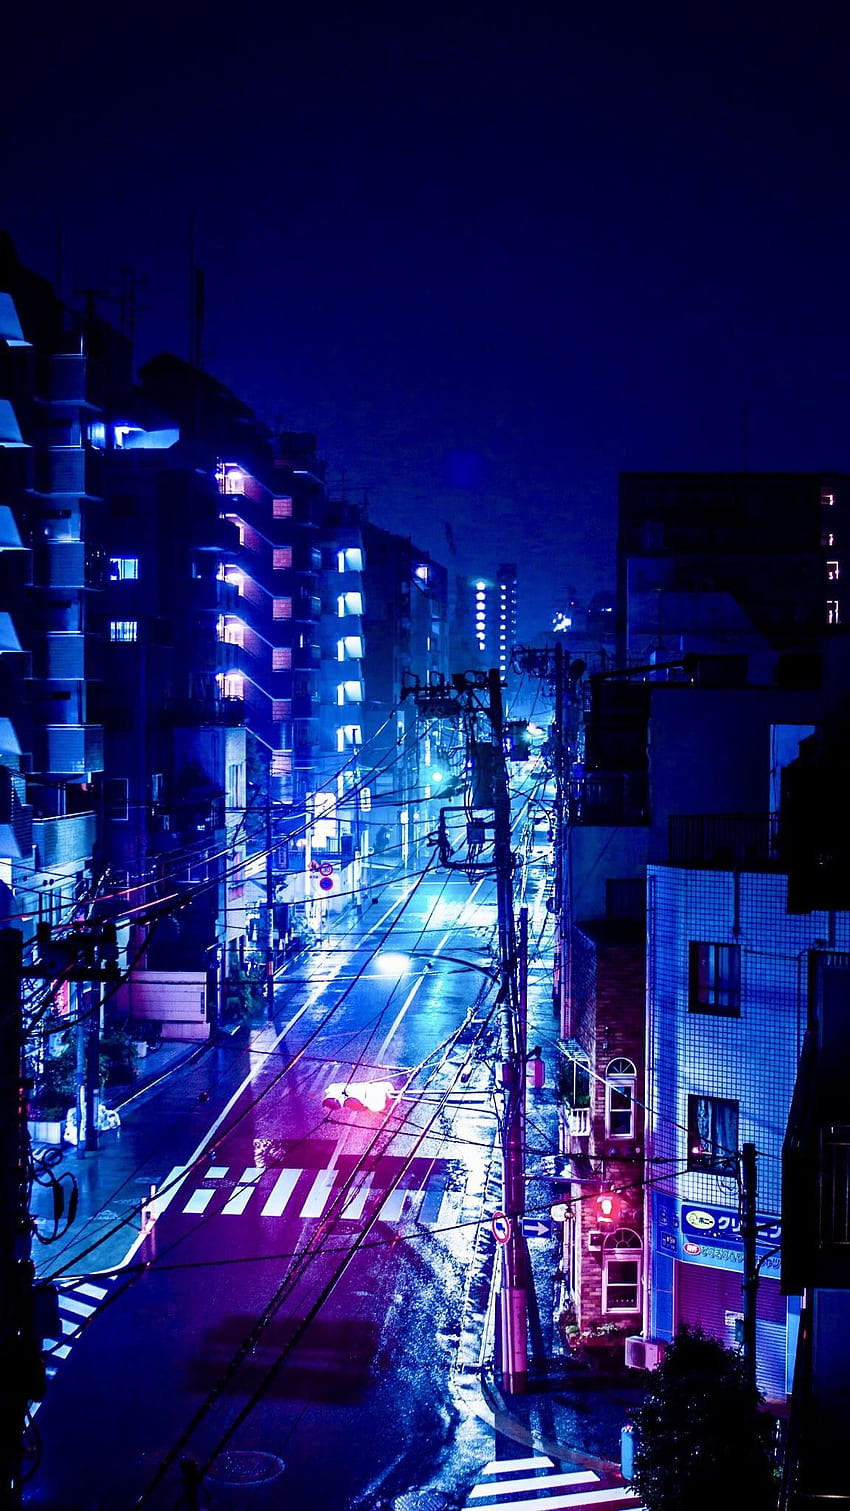 Download Neon City Dark Anime Aesthetic Desktop Wallpaper | Wallpapers.com